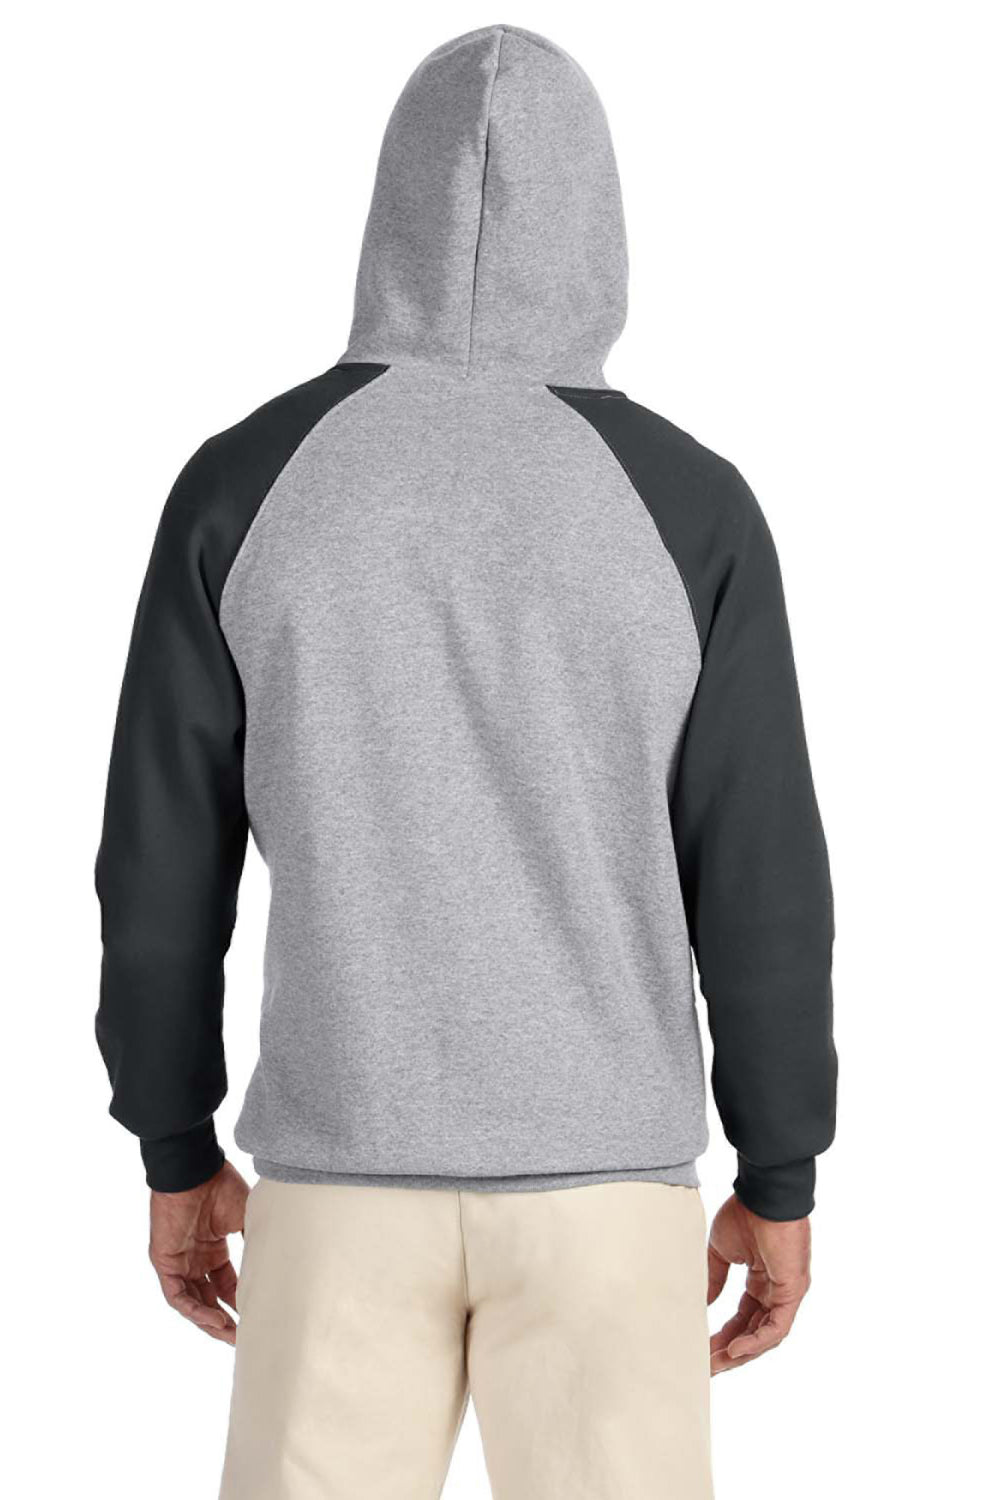 Jerzees 96CR Mens NuBlend Fleece Hooded Sweatshirt Hoodie Oxford Grey/Black Back